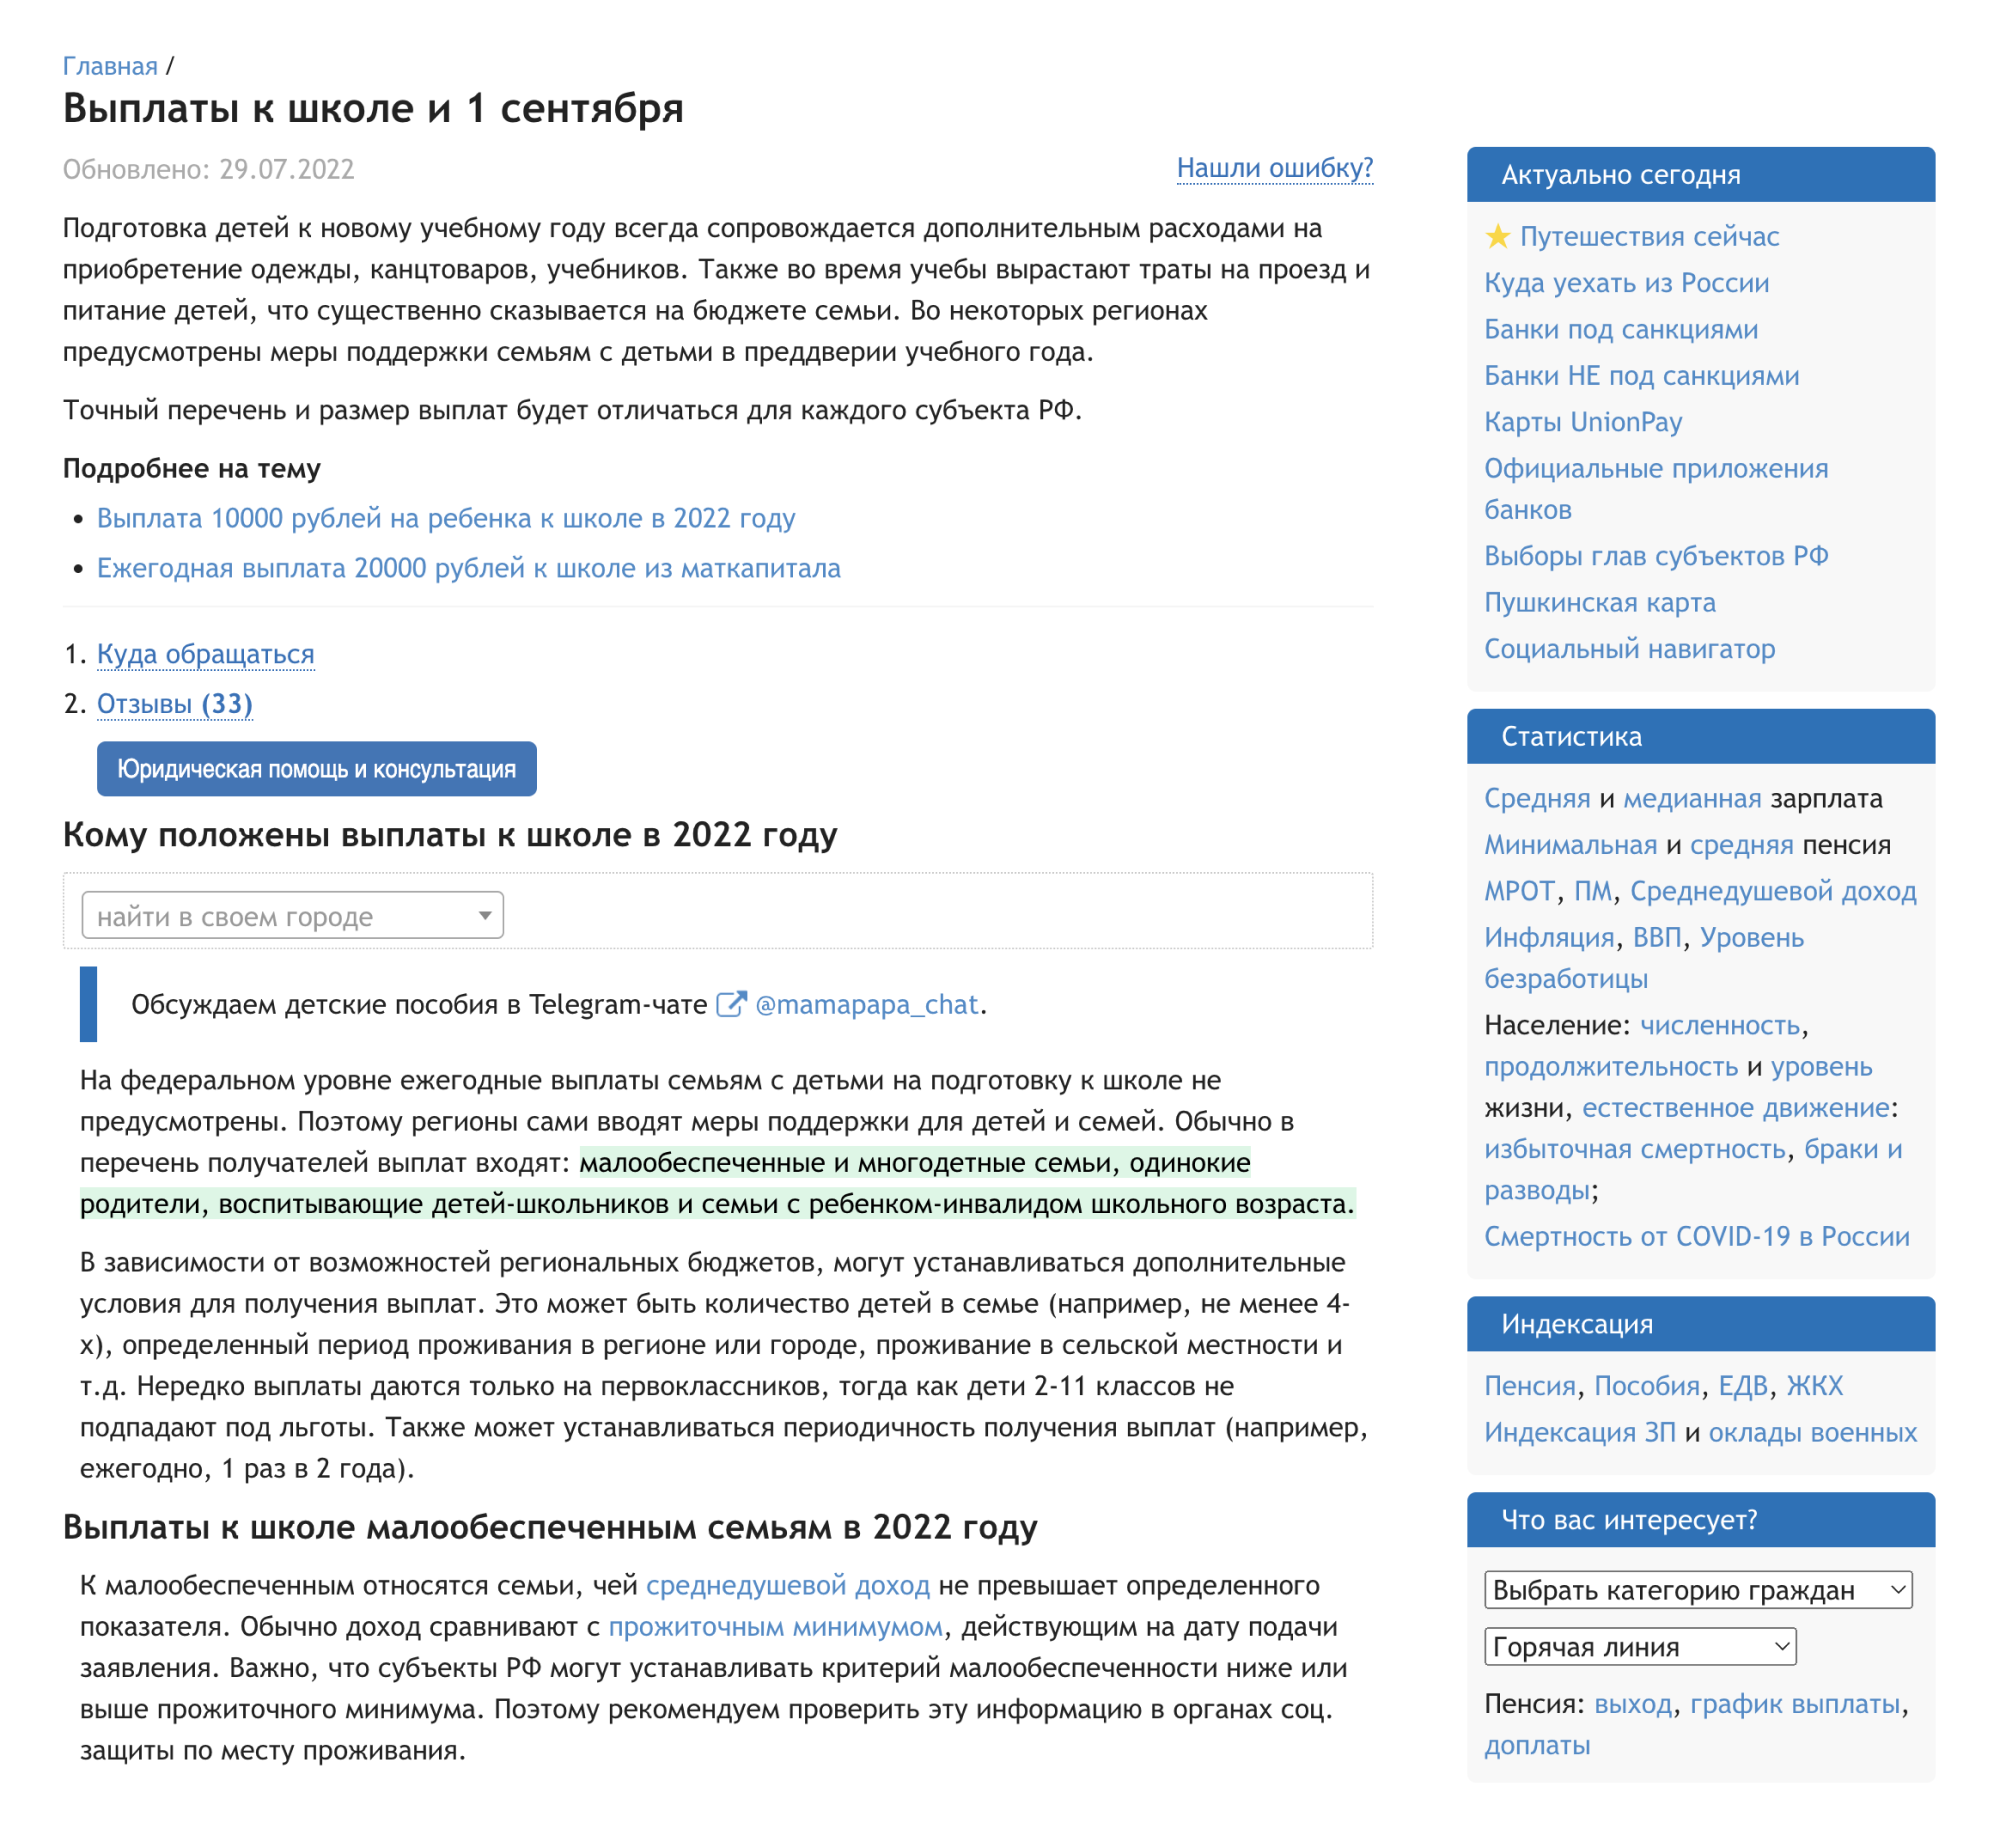 На сайте gogov.ru есть специальный раздел, где собирают информацию о социальных выплатах, которые связаны со школами